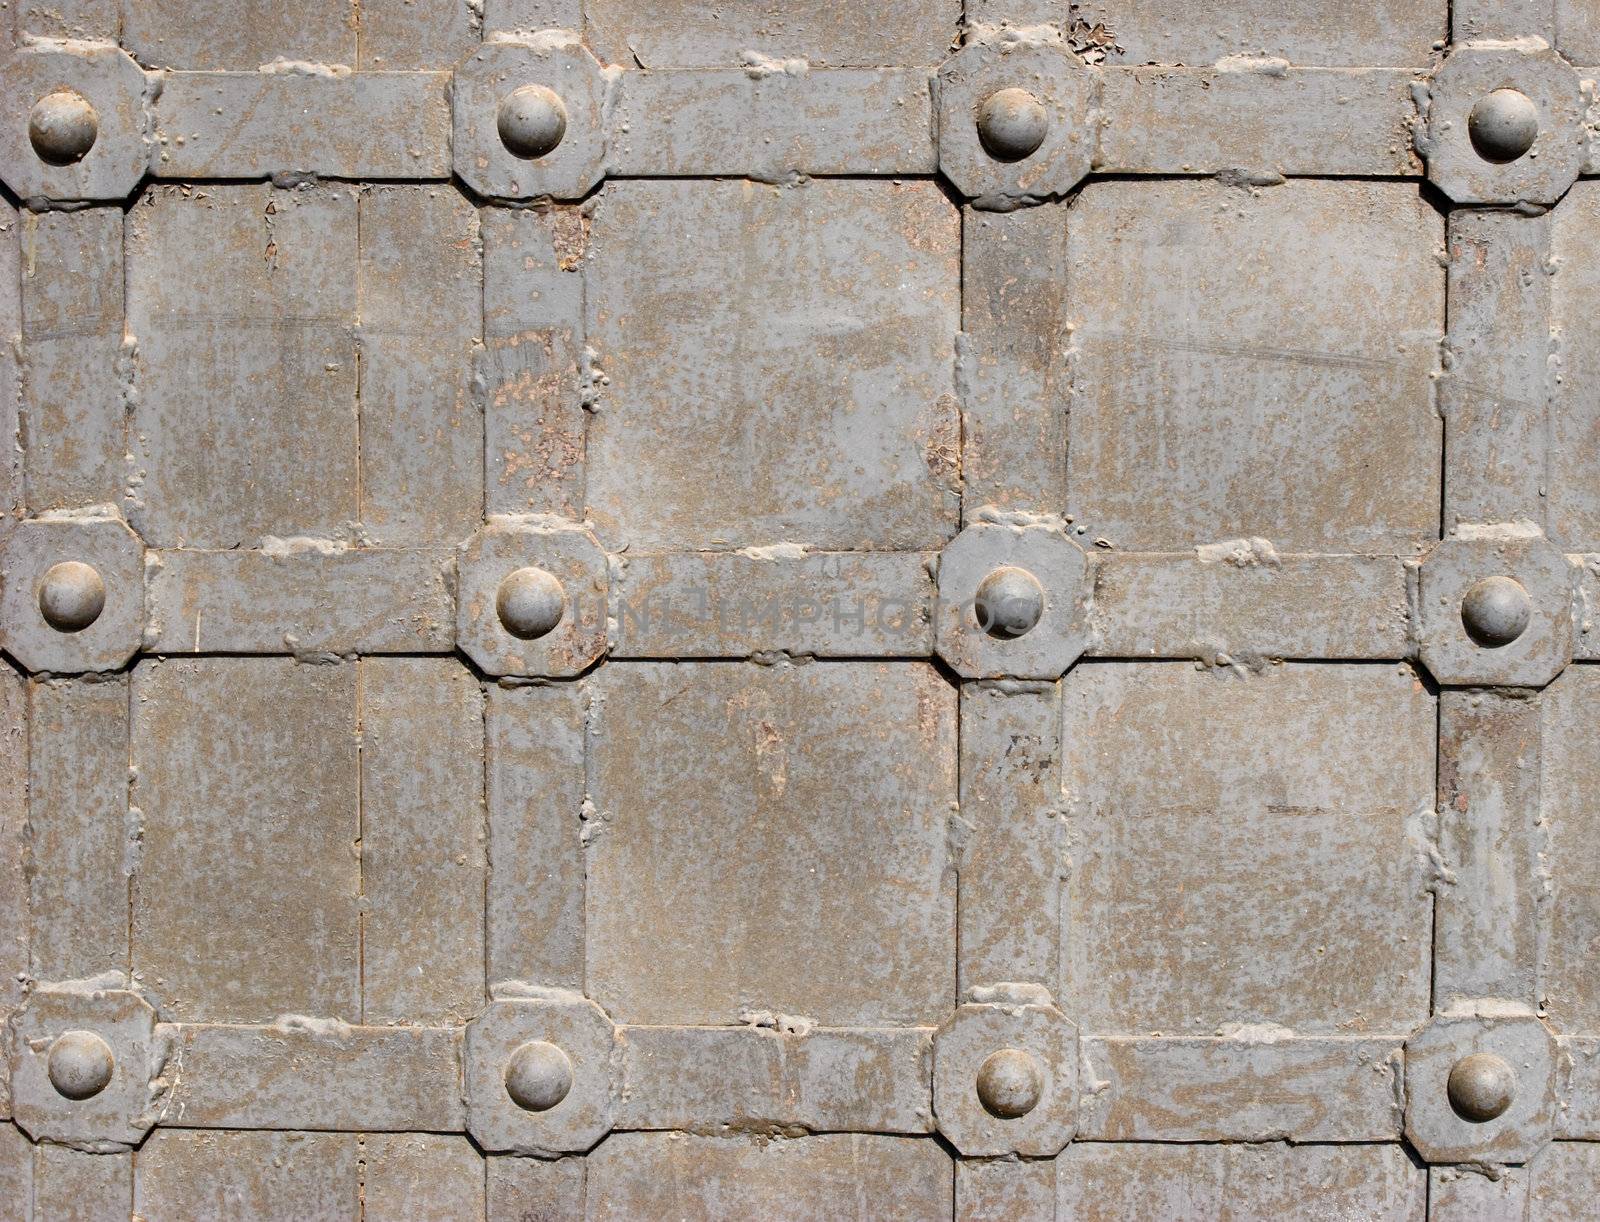 Fragment of the weathered steel monastery door